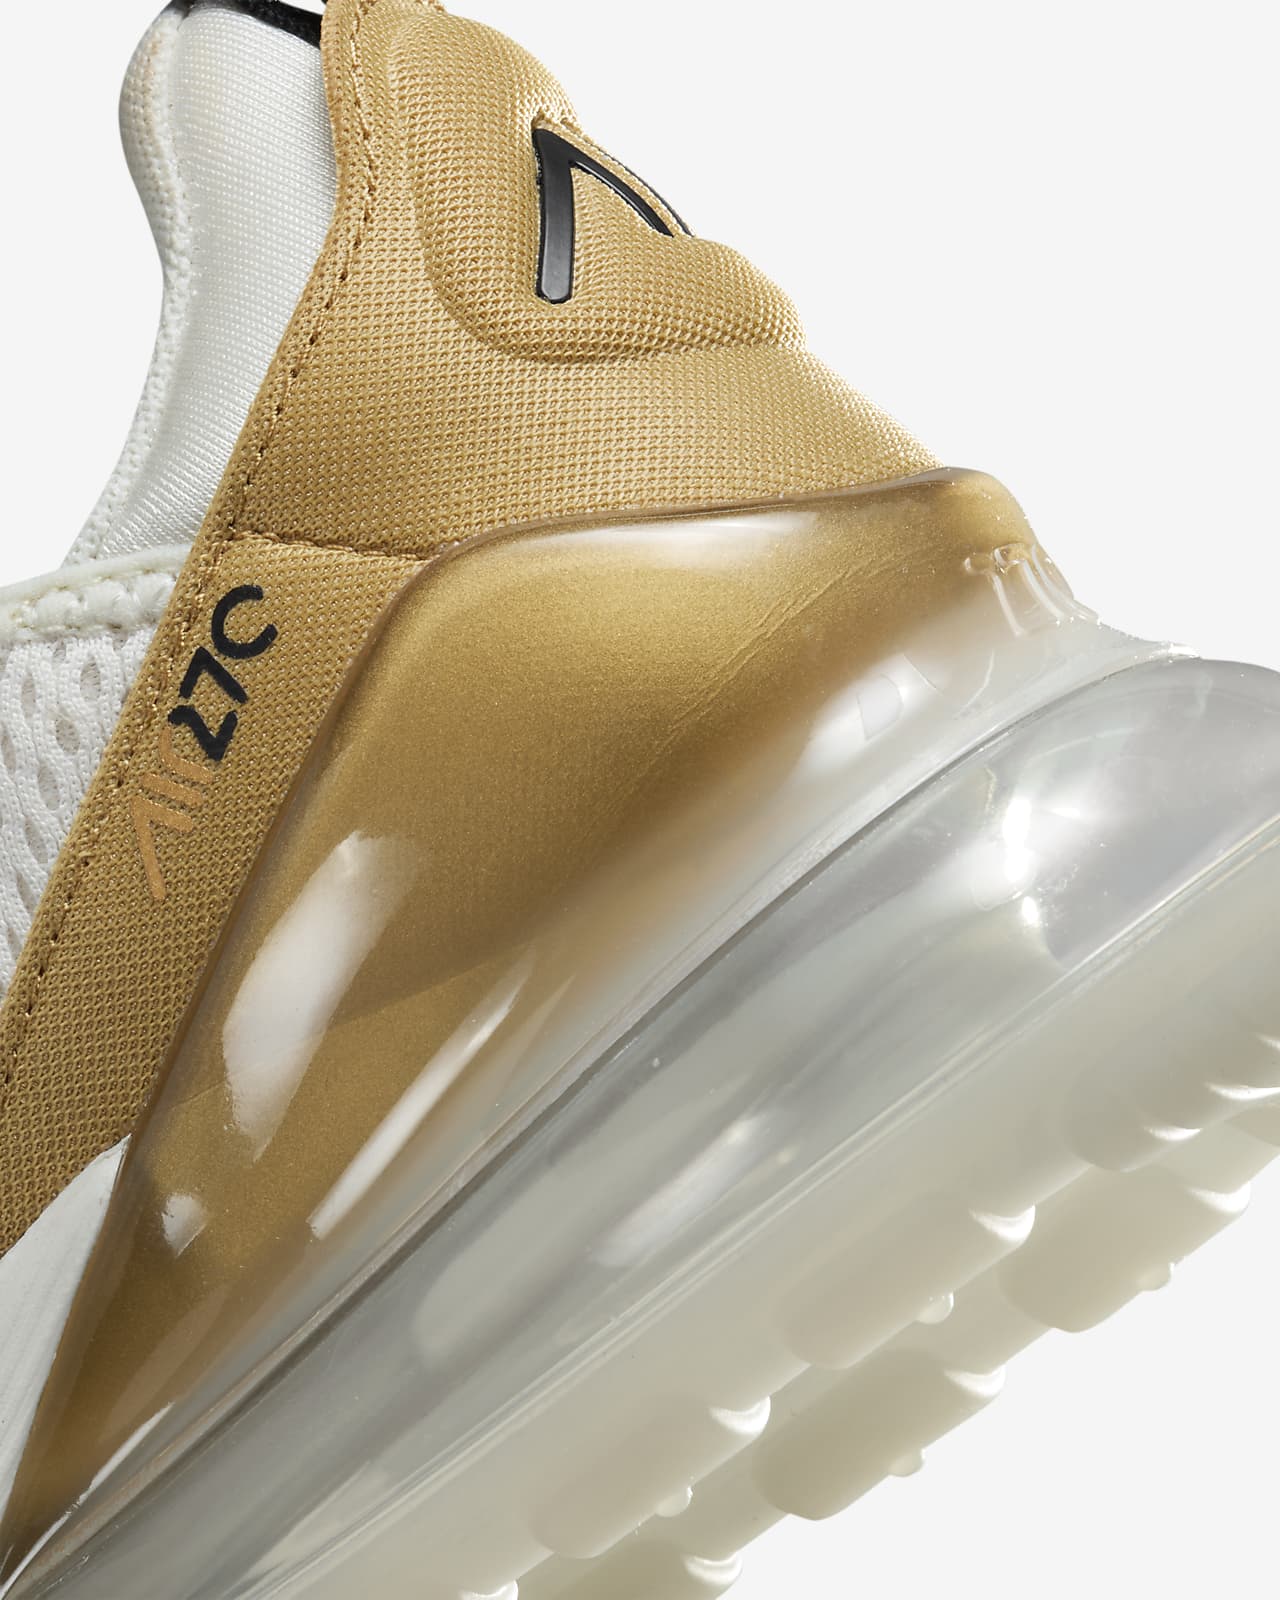 Tjen sfærisk Lure Nike Air Max 270-sko til kvinder. Nike DK